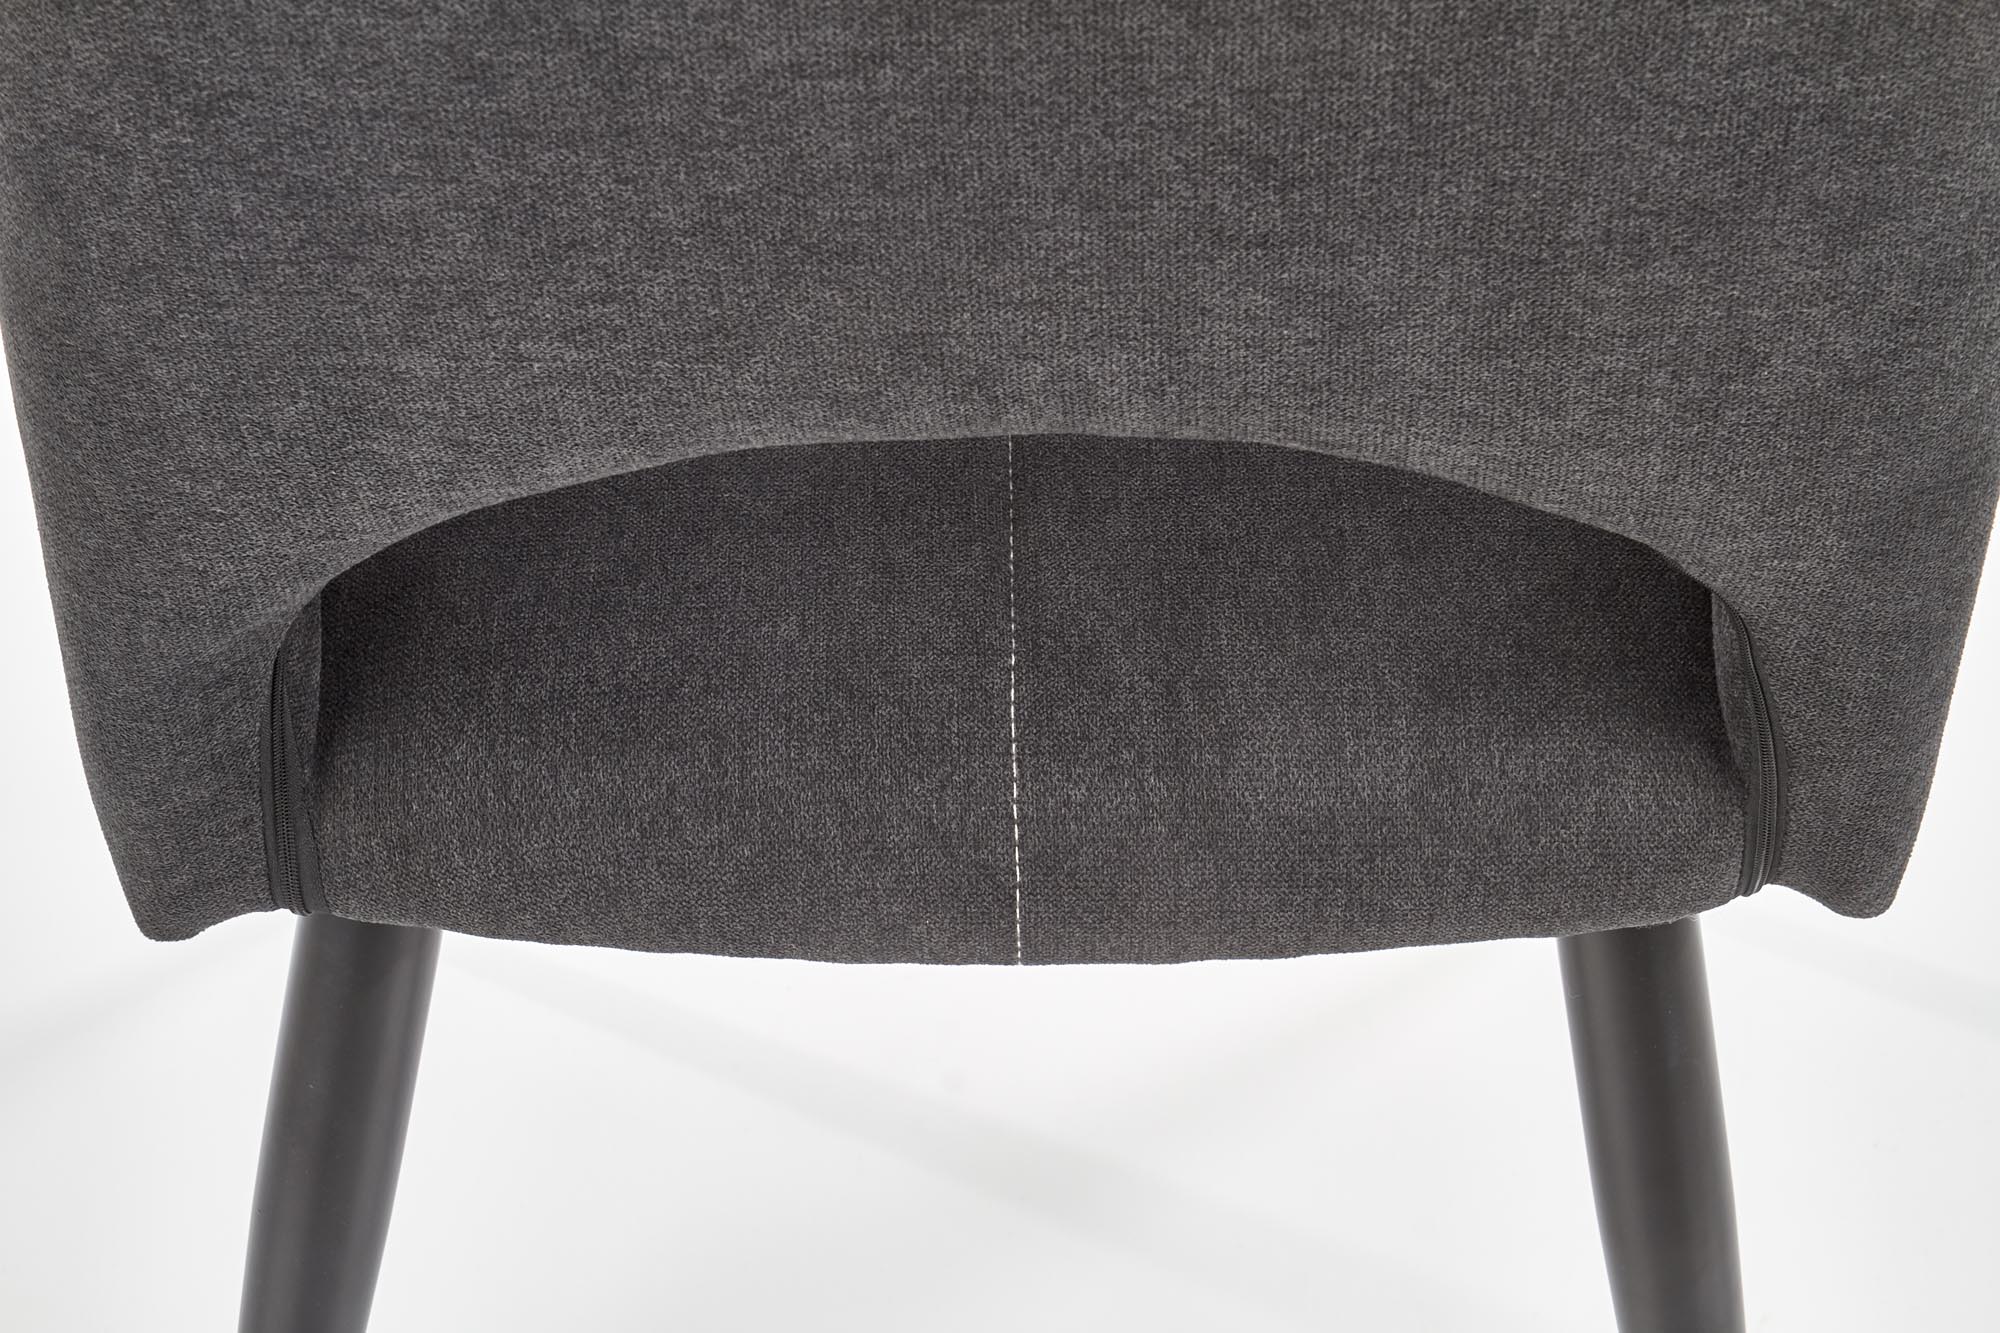 Krzesło tapicerowane K369 - ciemny popiel krzesło tapicerowane k369 - ciemny popiel